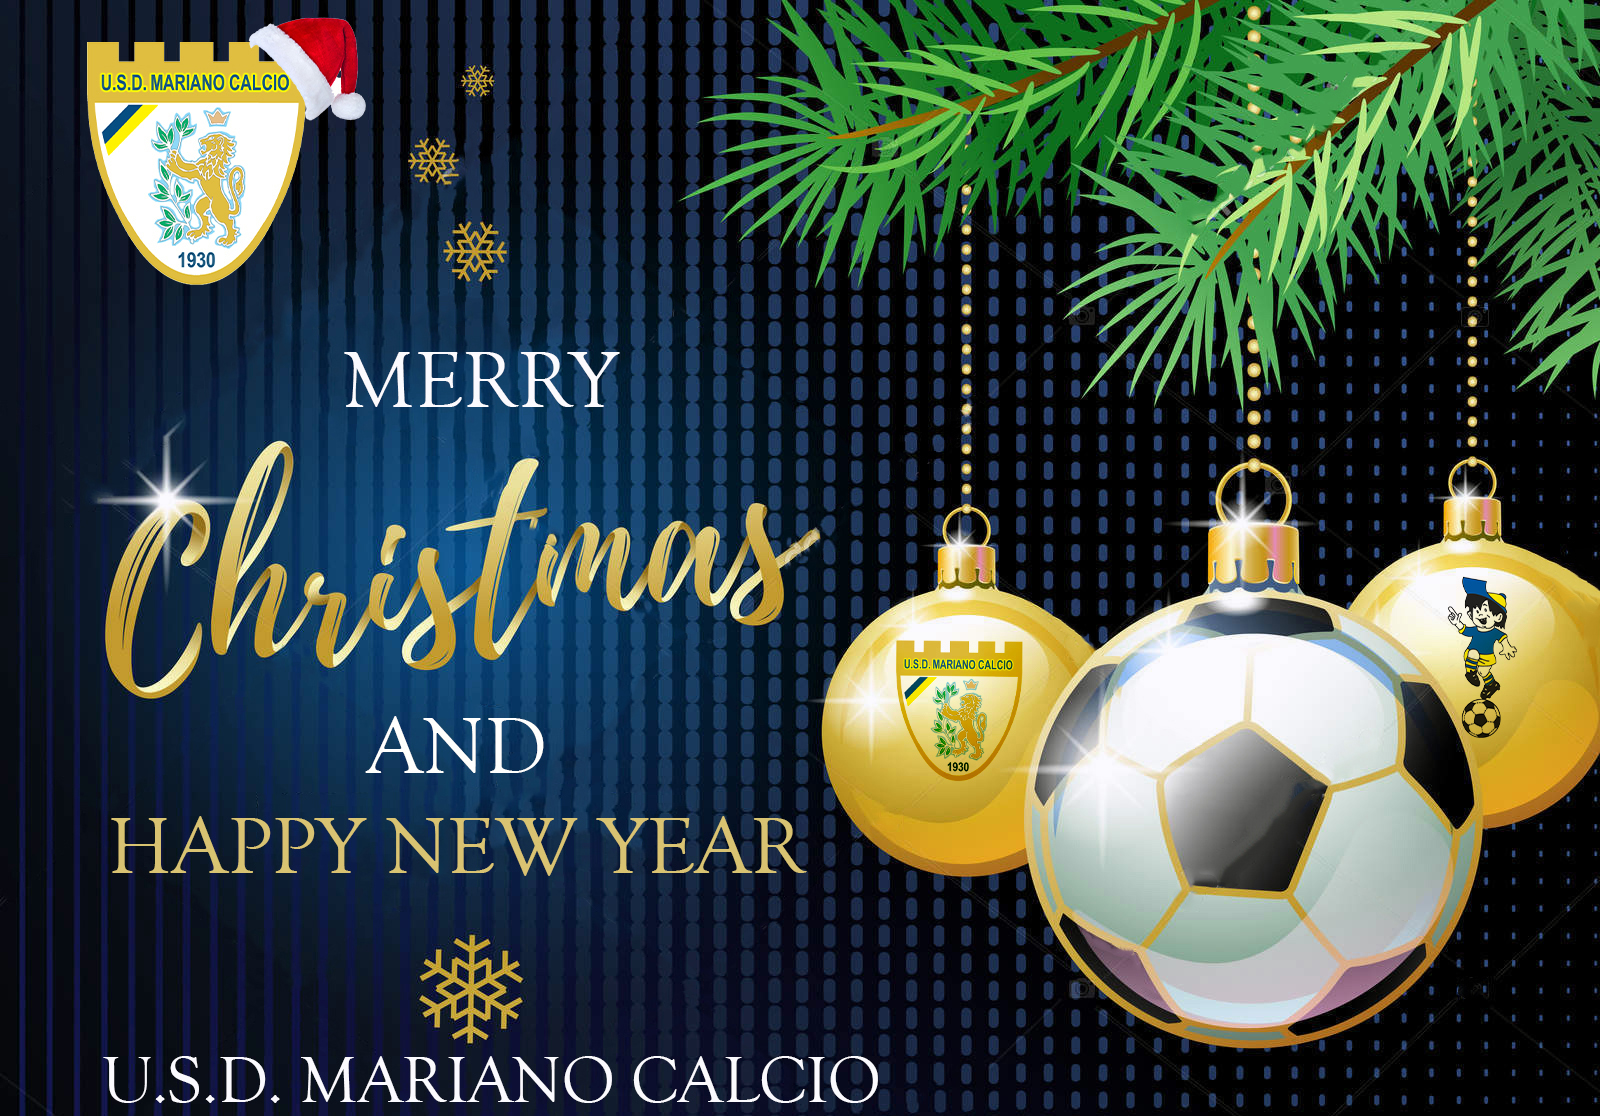 Buon Natale Calcio.La Societa U S D Mariano Calcio Augura Un Buon Natale E Felice Anno Nuovo A Voi E Alle Vostre Famiglie